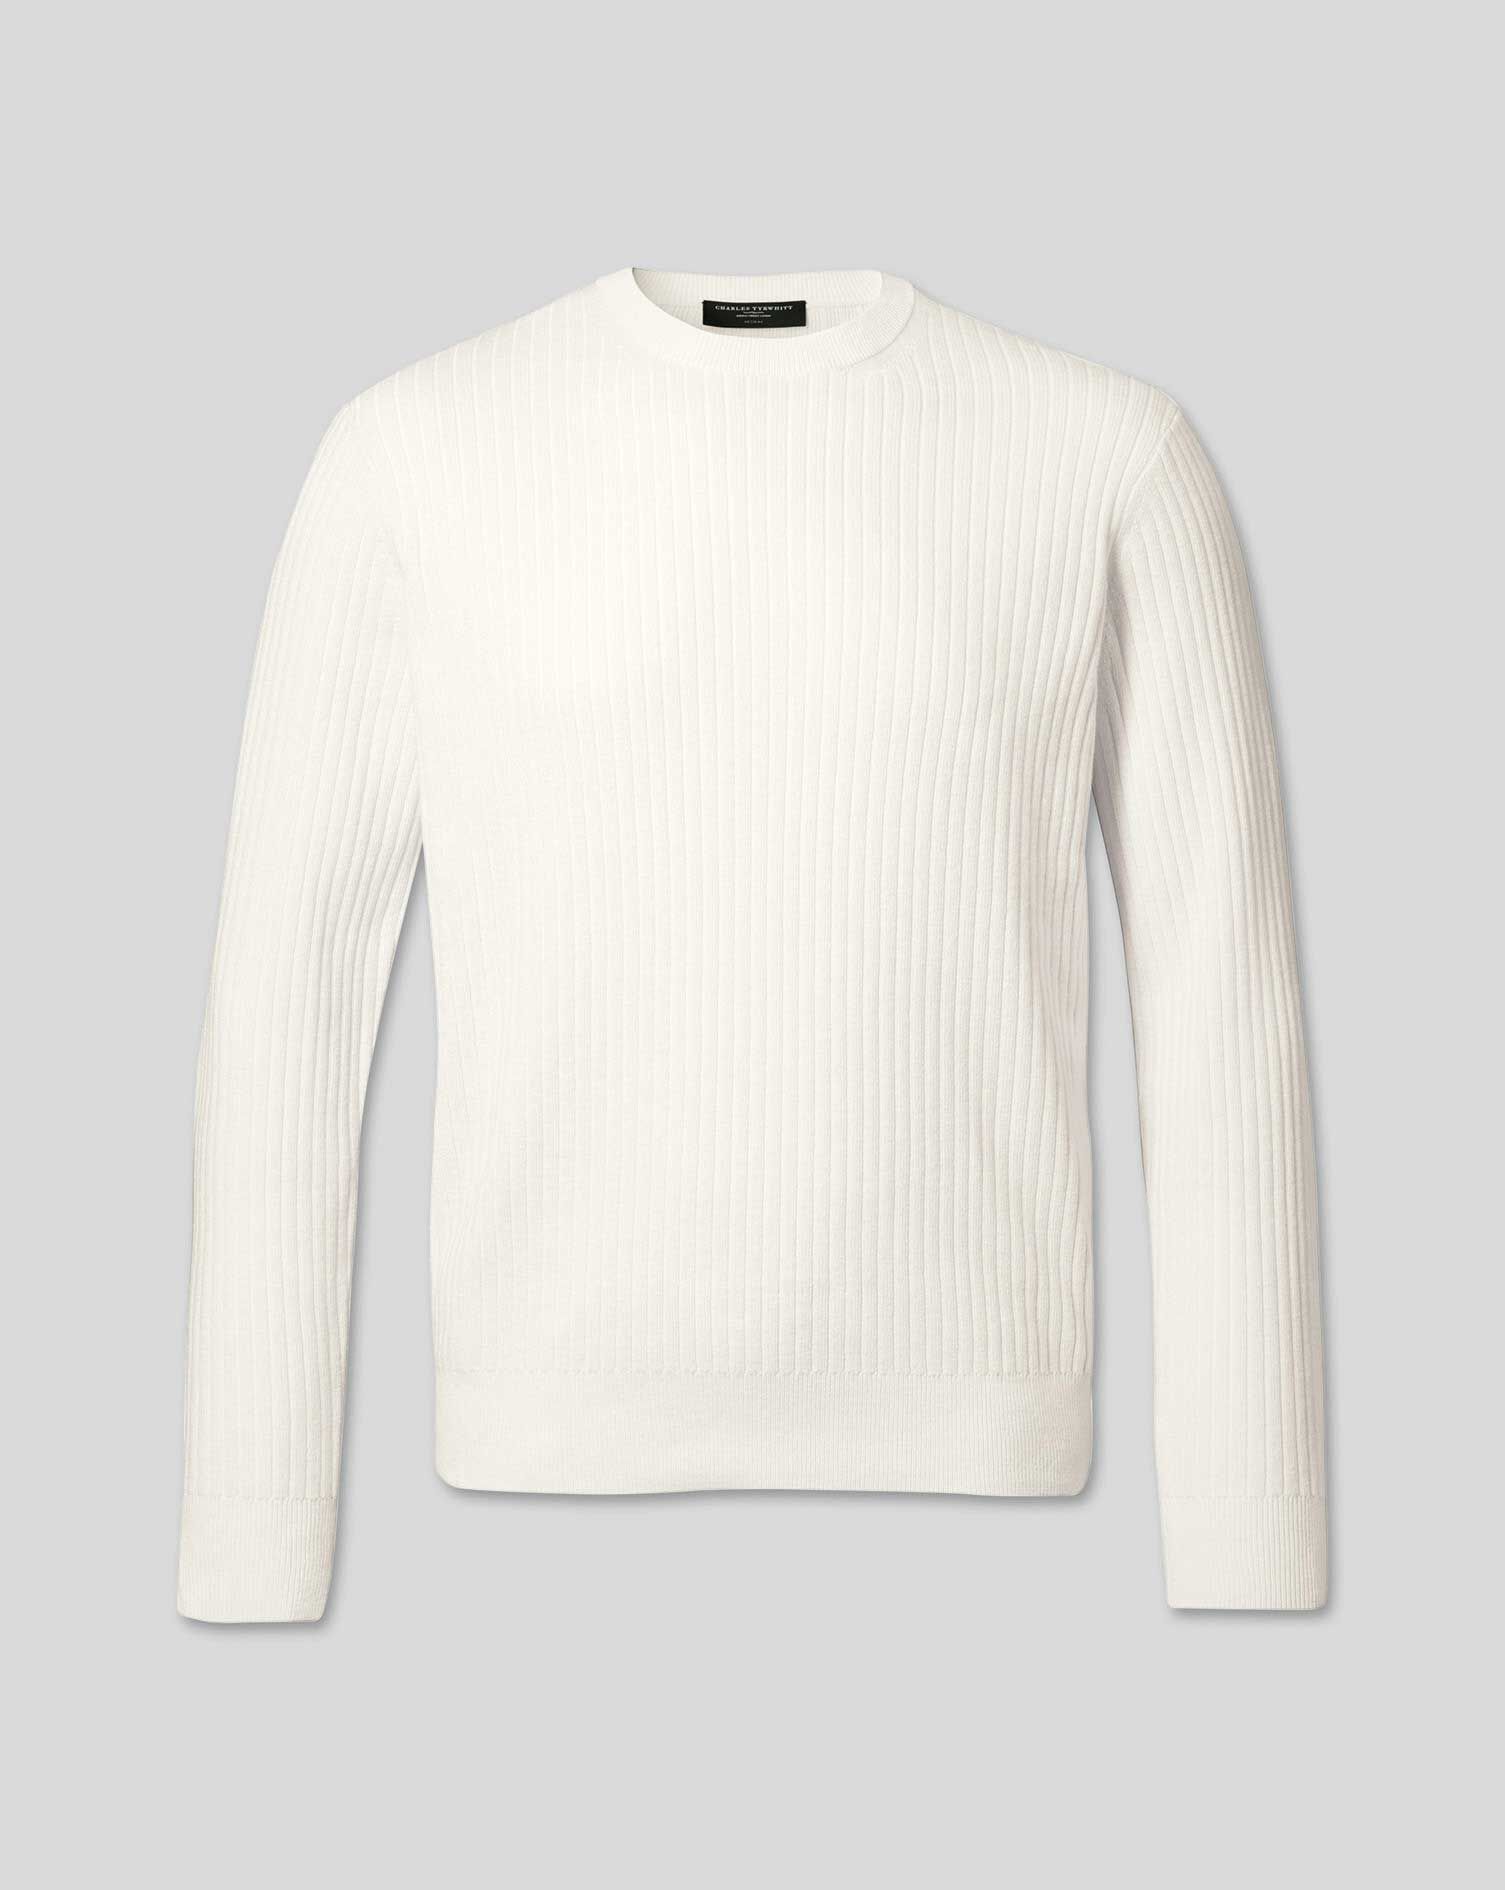 white merino sweater